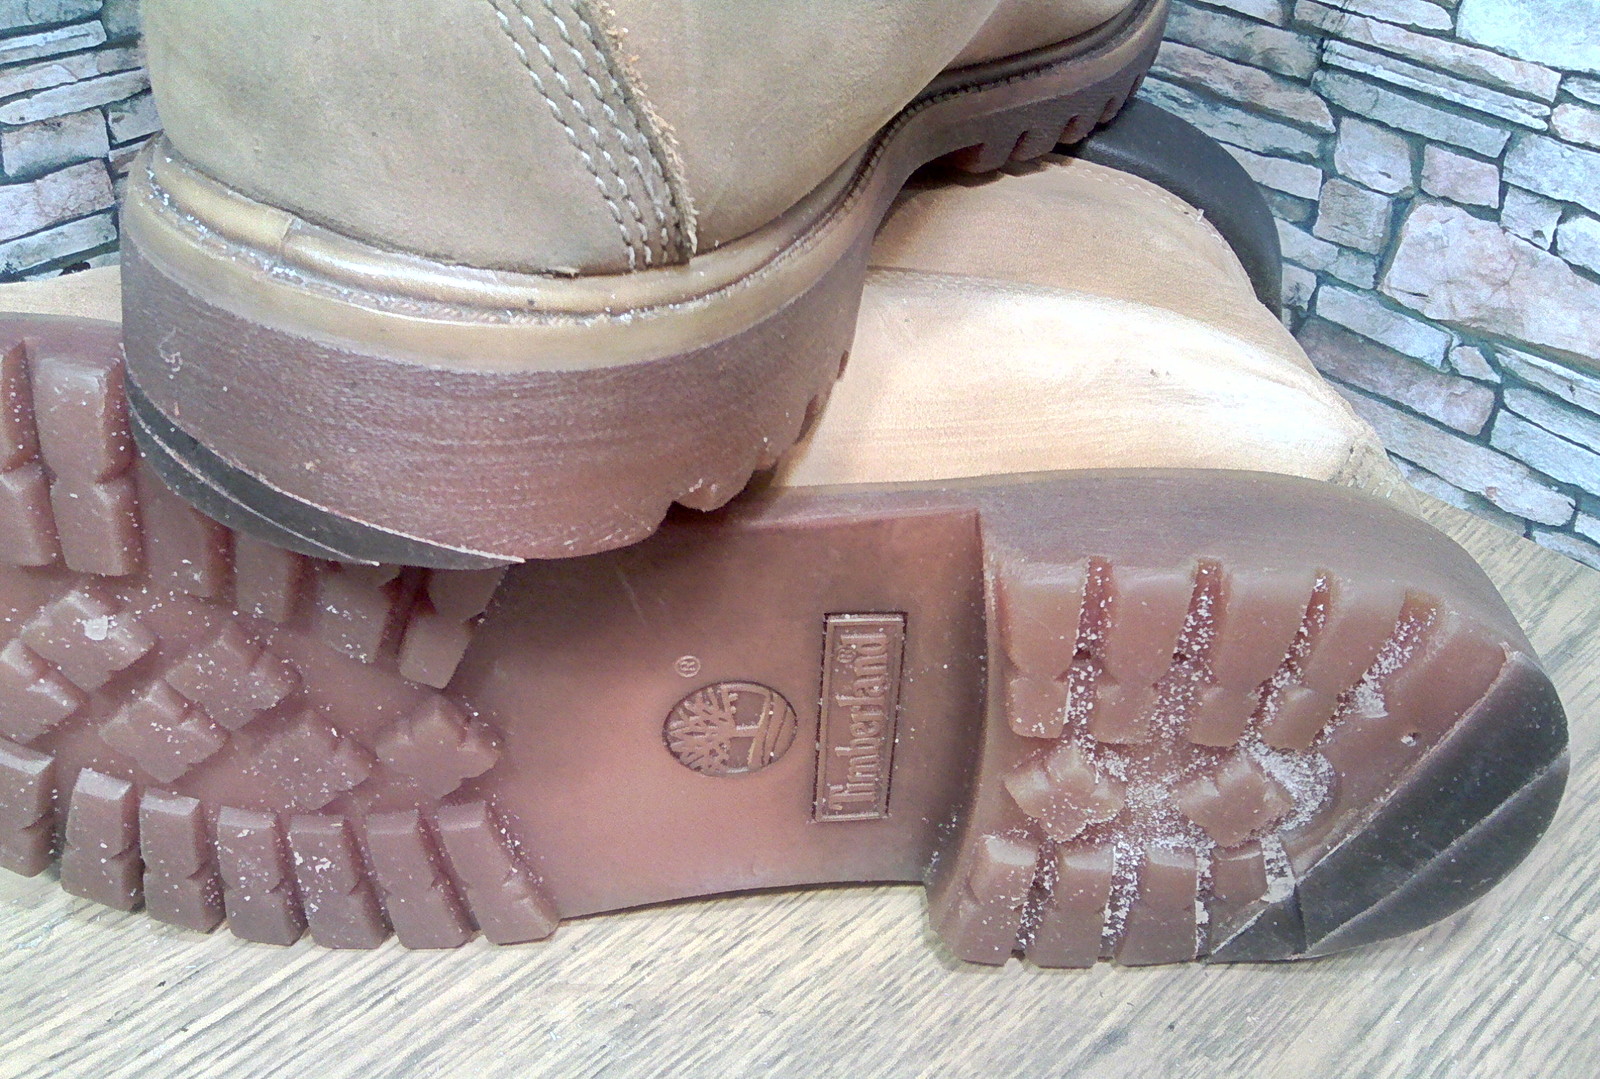 При длительном использовании подошва обуви изнашивается впр. Timberland 8551 1r. Тимберленд подошва отклеилась. Подошва для обуви тимберленд. Ботинки Timberland подошва.